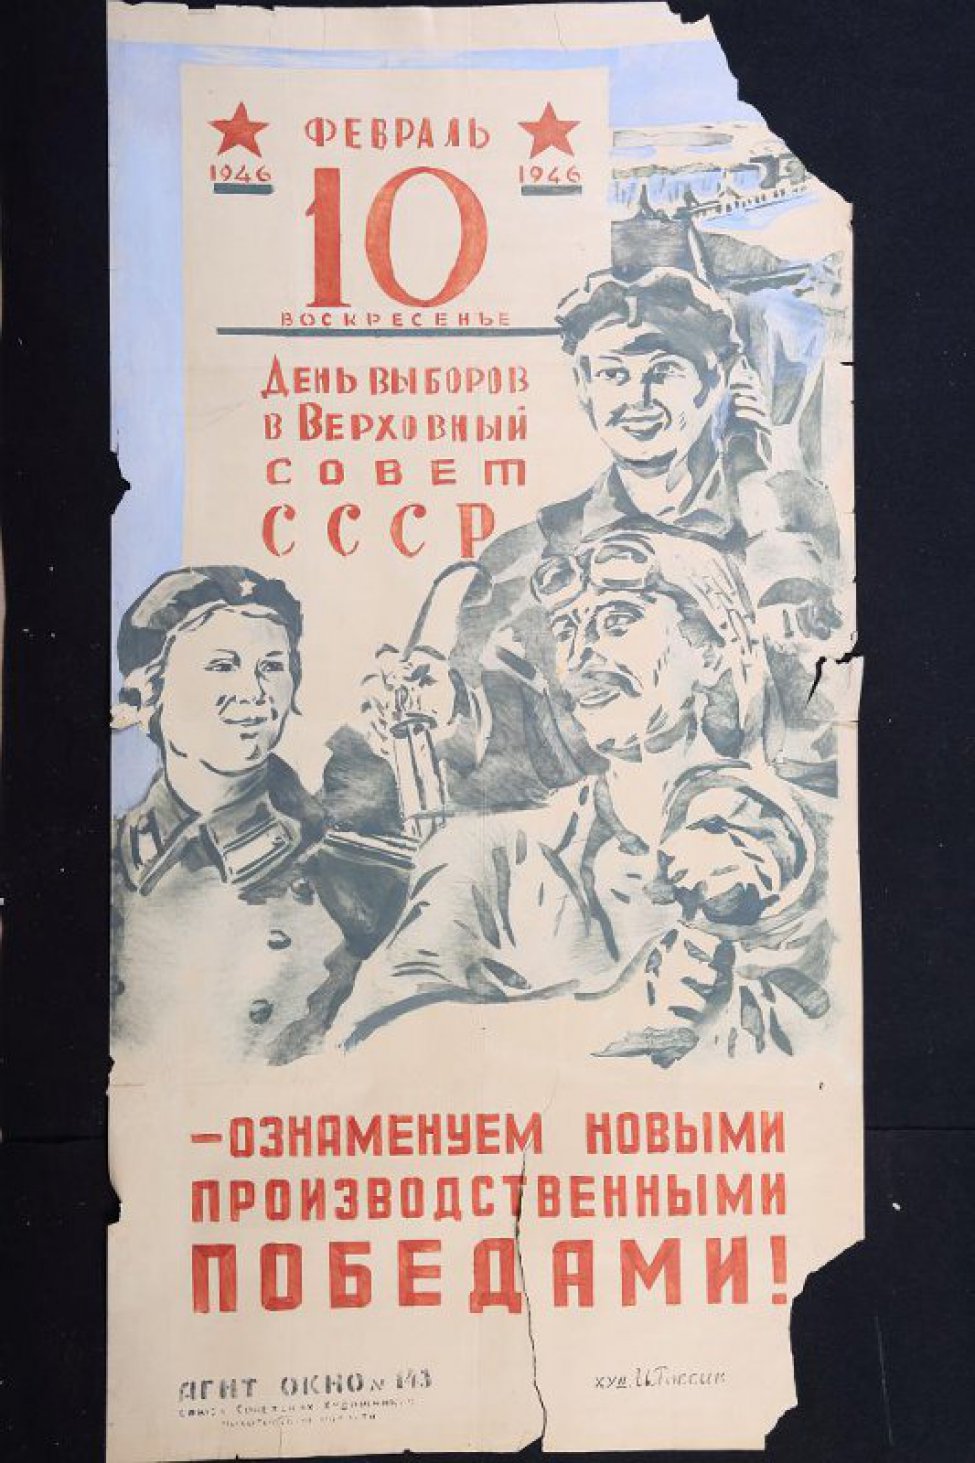 Изображено: шахтер,металлург, девушка-железнодорожница, текст : " - ознаменуем новыми производственными победами".